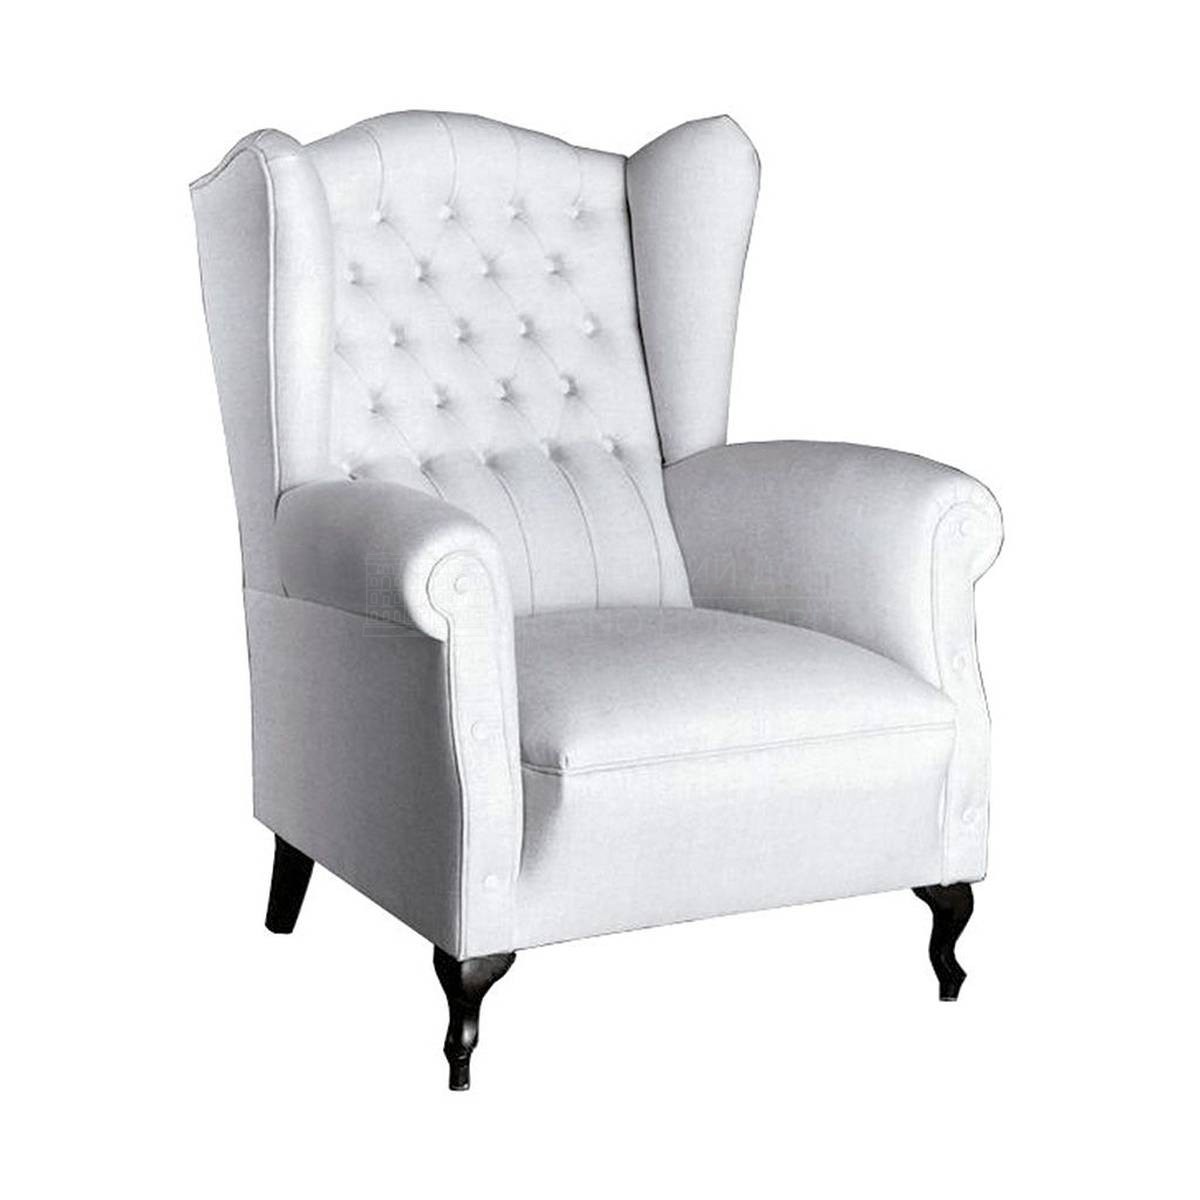 Кресло Z-8101 armchair из Испании фабрики GUADARTE